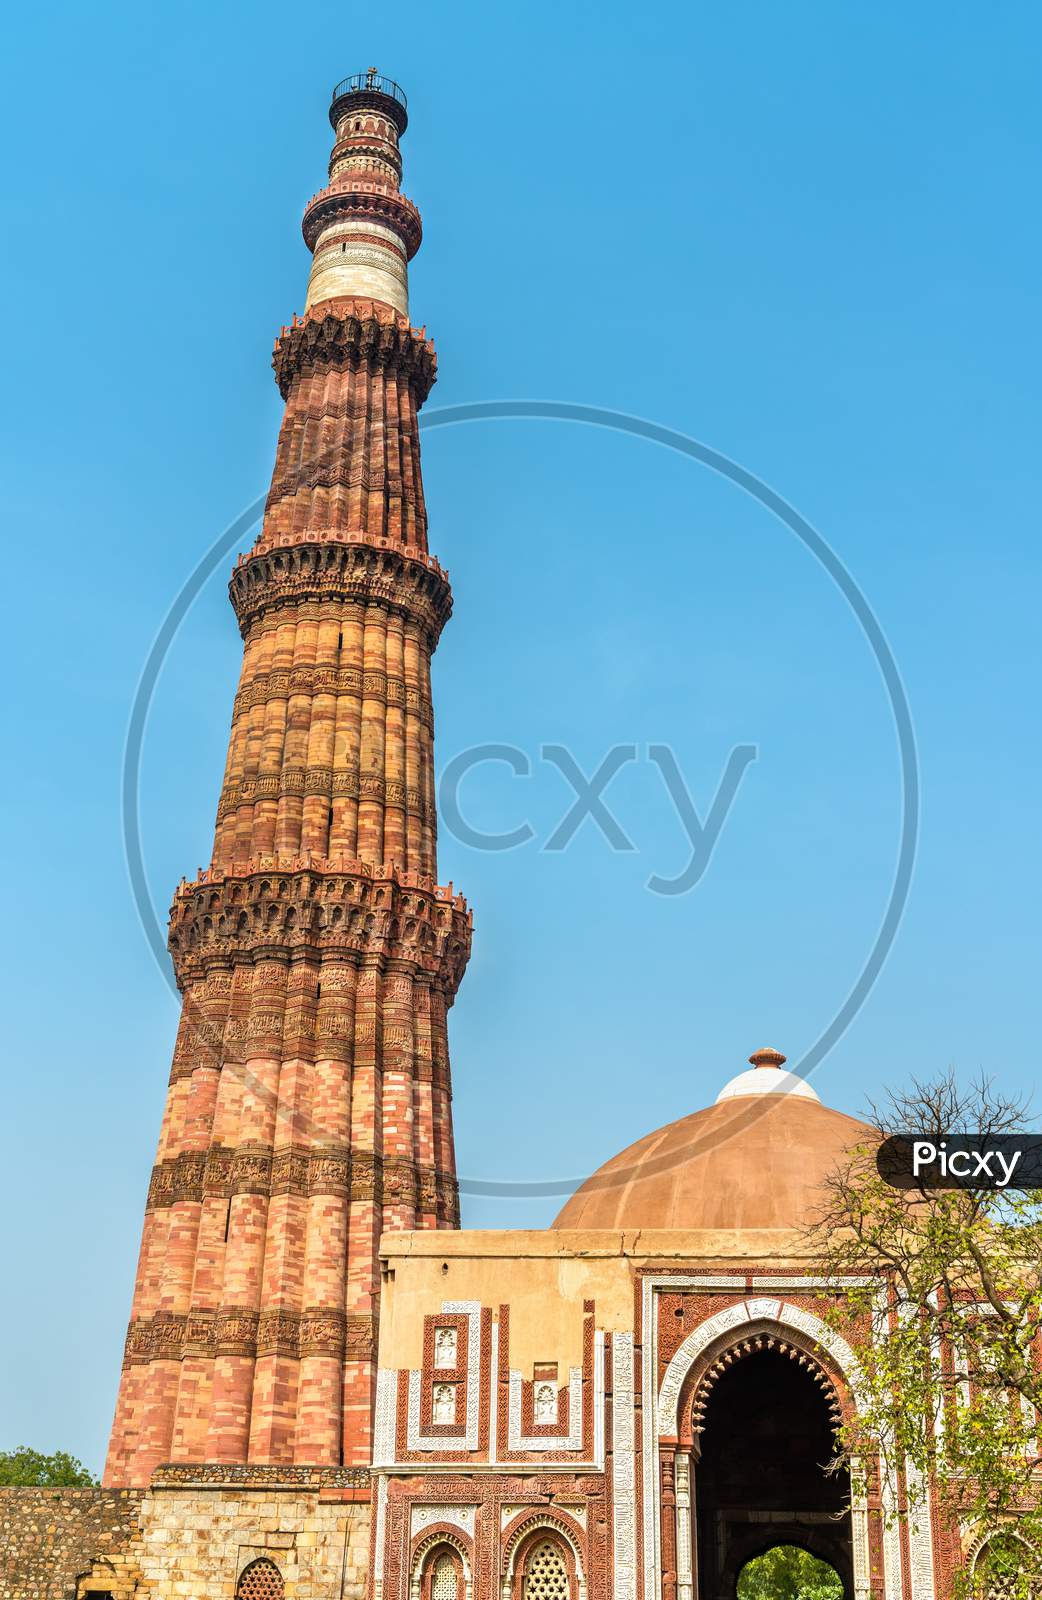 Alai Darwaza And Qutub Minar At The Qutb Complex In Delhi, India